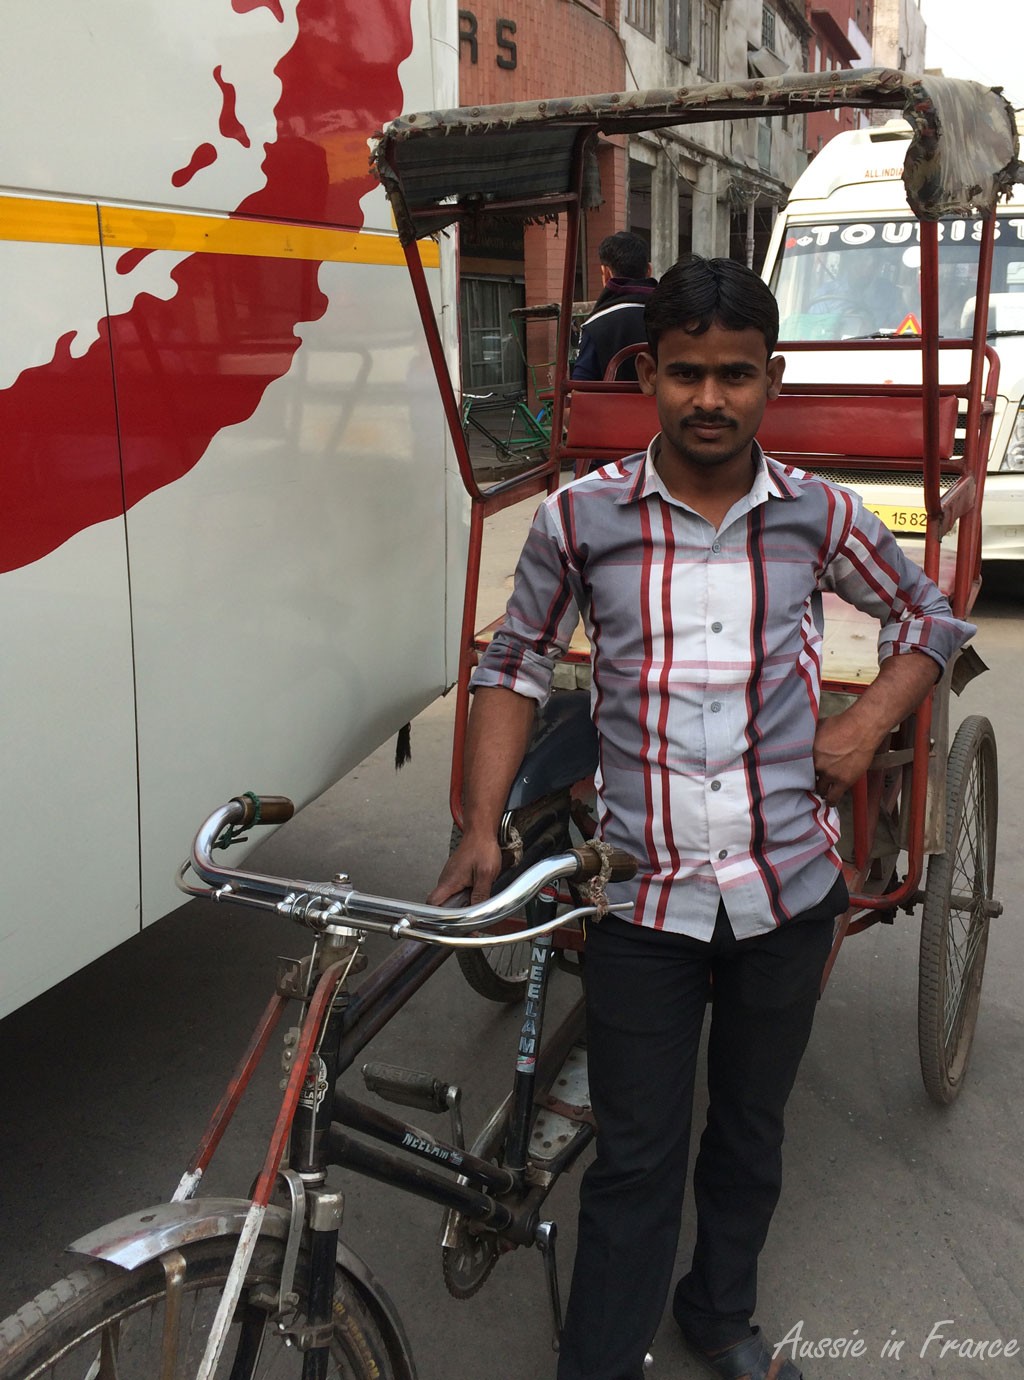 Our rickshaw wallah